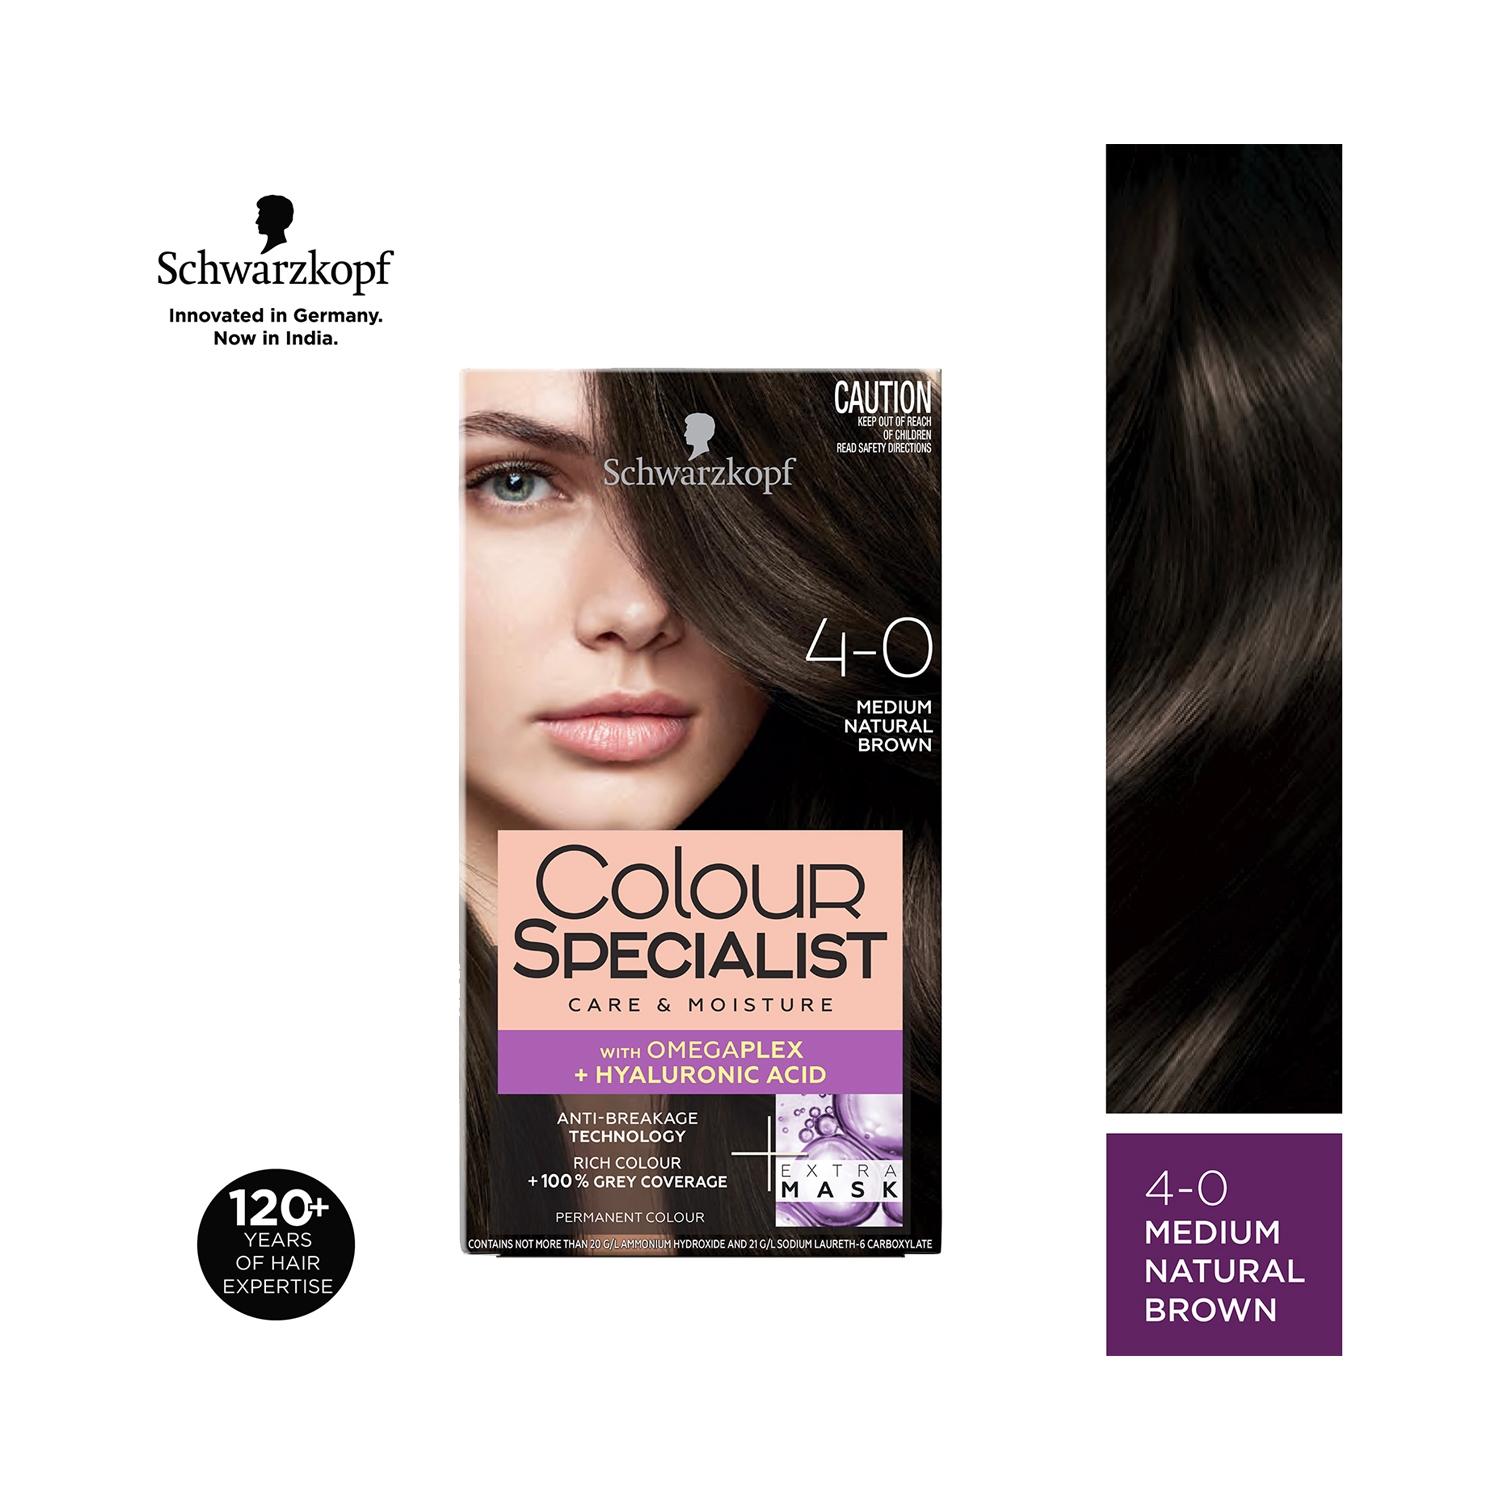 Schwarzkopf | Schwarzkopf Colour Specialist Permanent Hair Colour - 4.0 Medium Natural Brown (165ml)